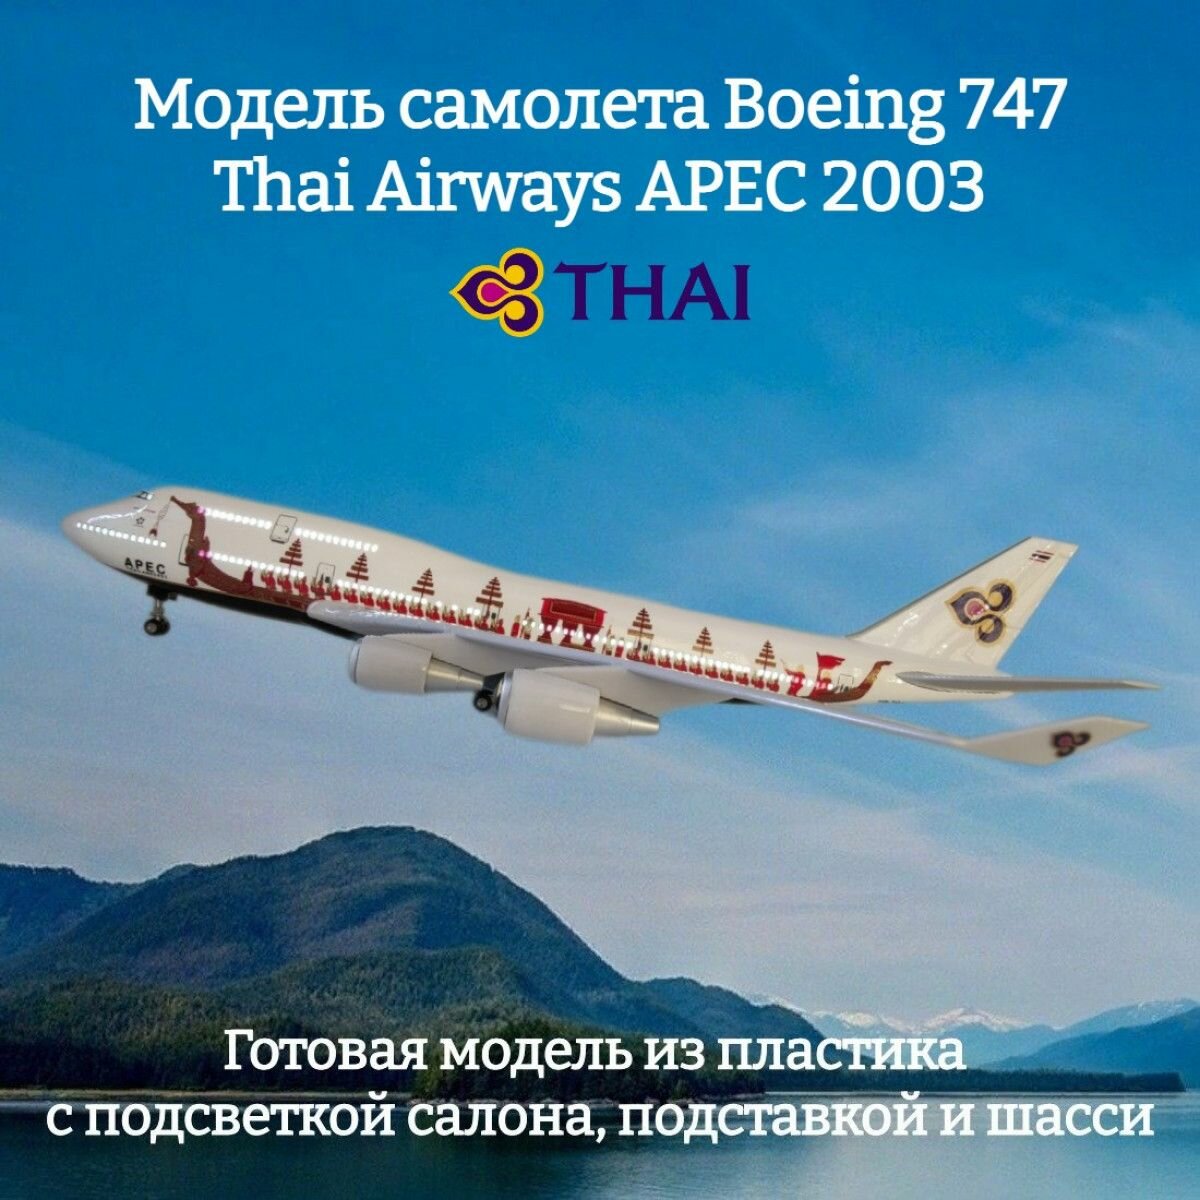 Модель самолета Boeing 747 Thai Airways APEC 2003 1:160 (с подсветкой салона)